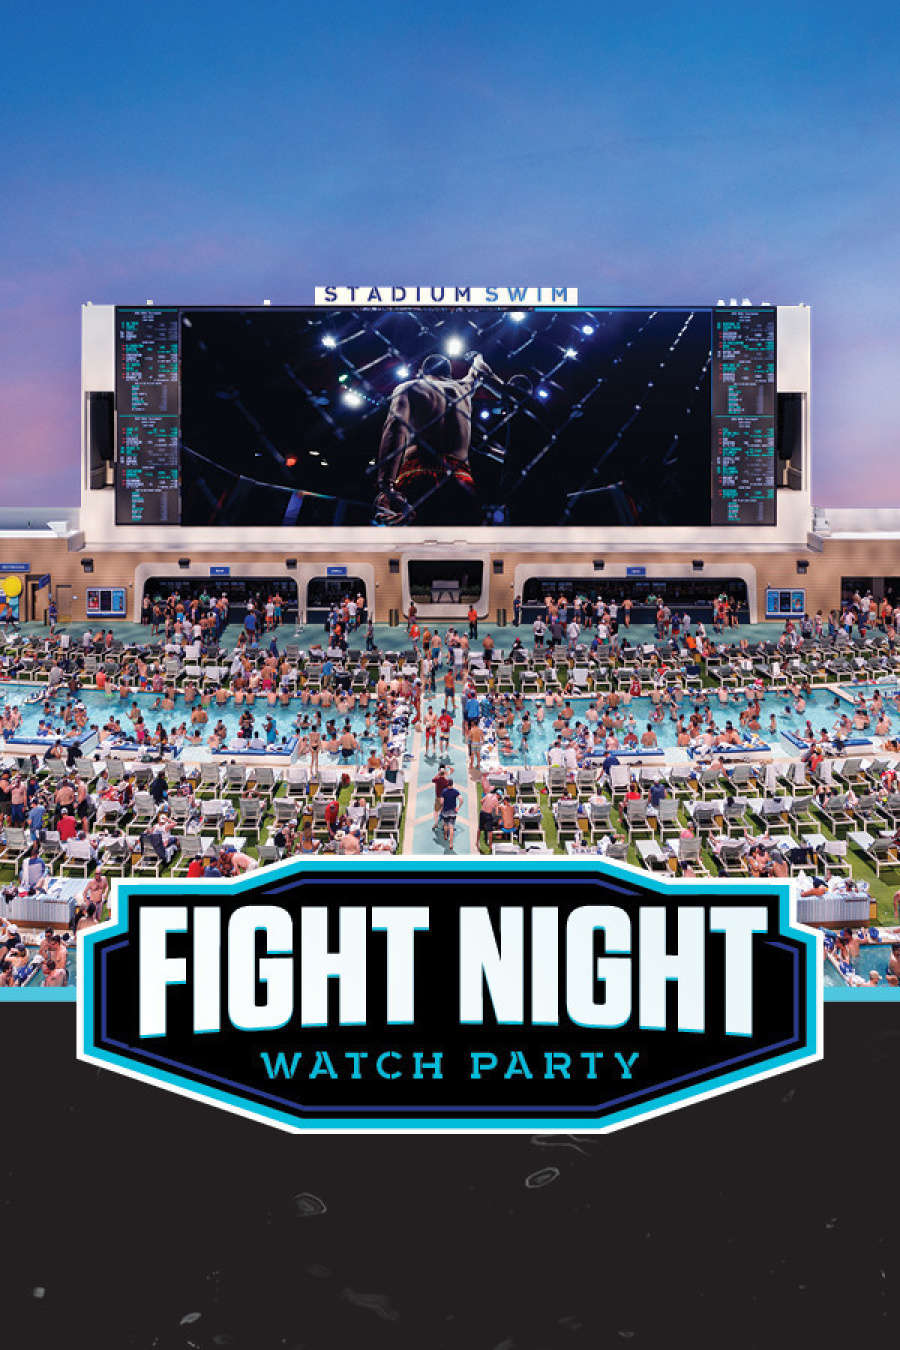 UFC 295: JONES VS MIOCIC WATCH PARTY